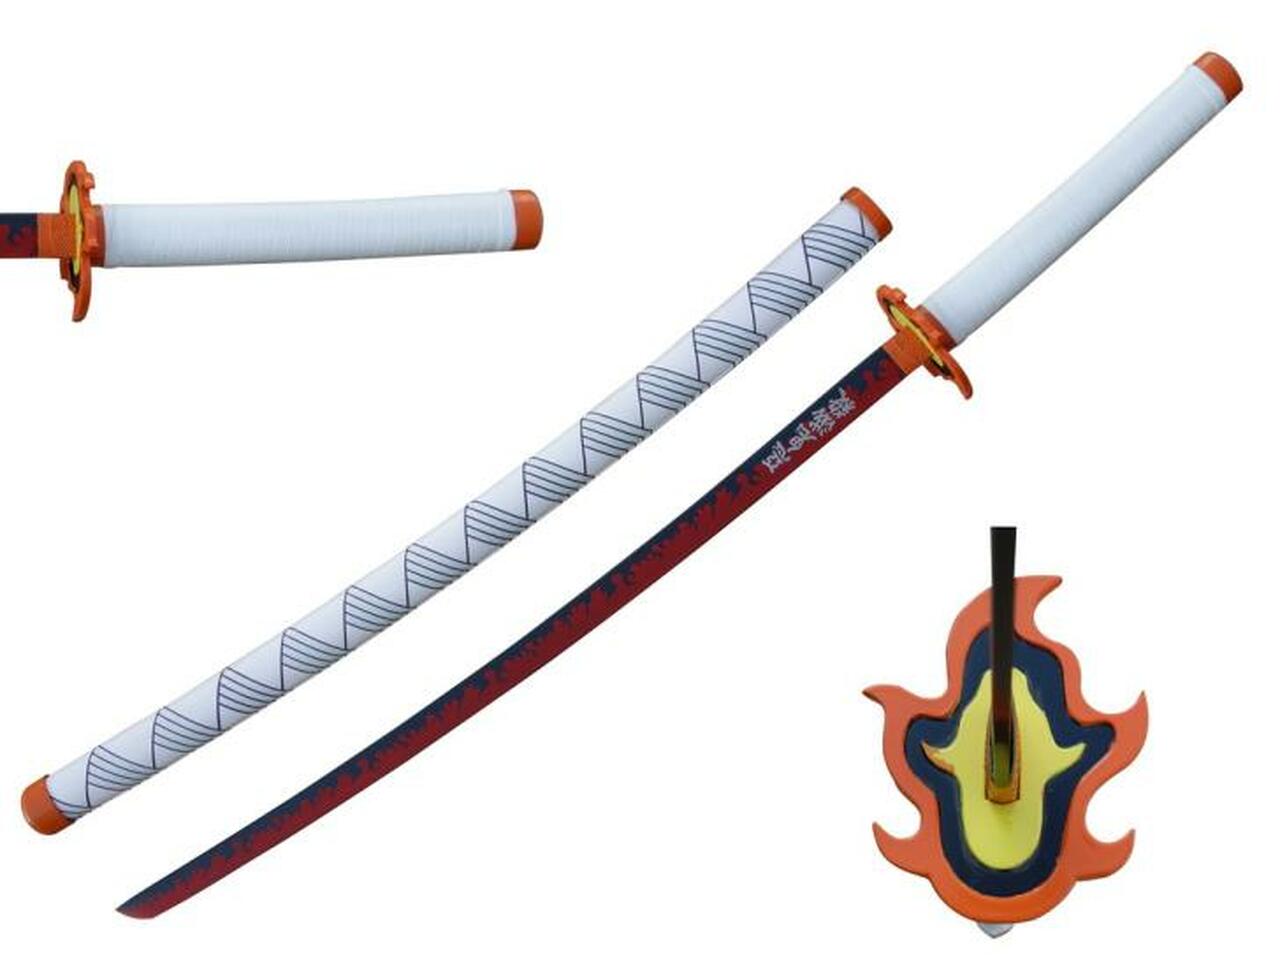 Kyojuro Rengoku (Demon Slayer) Fire Inspired Nichirin Sword Deluxe Steel Replica